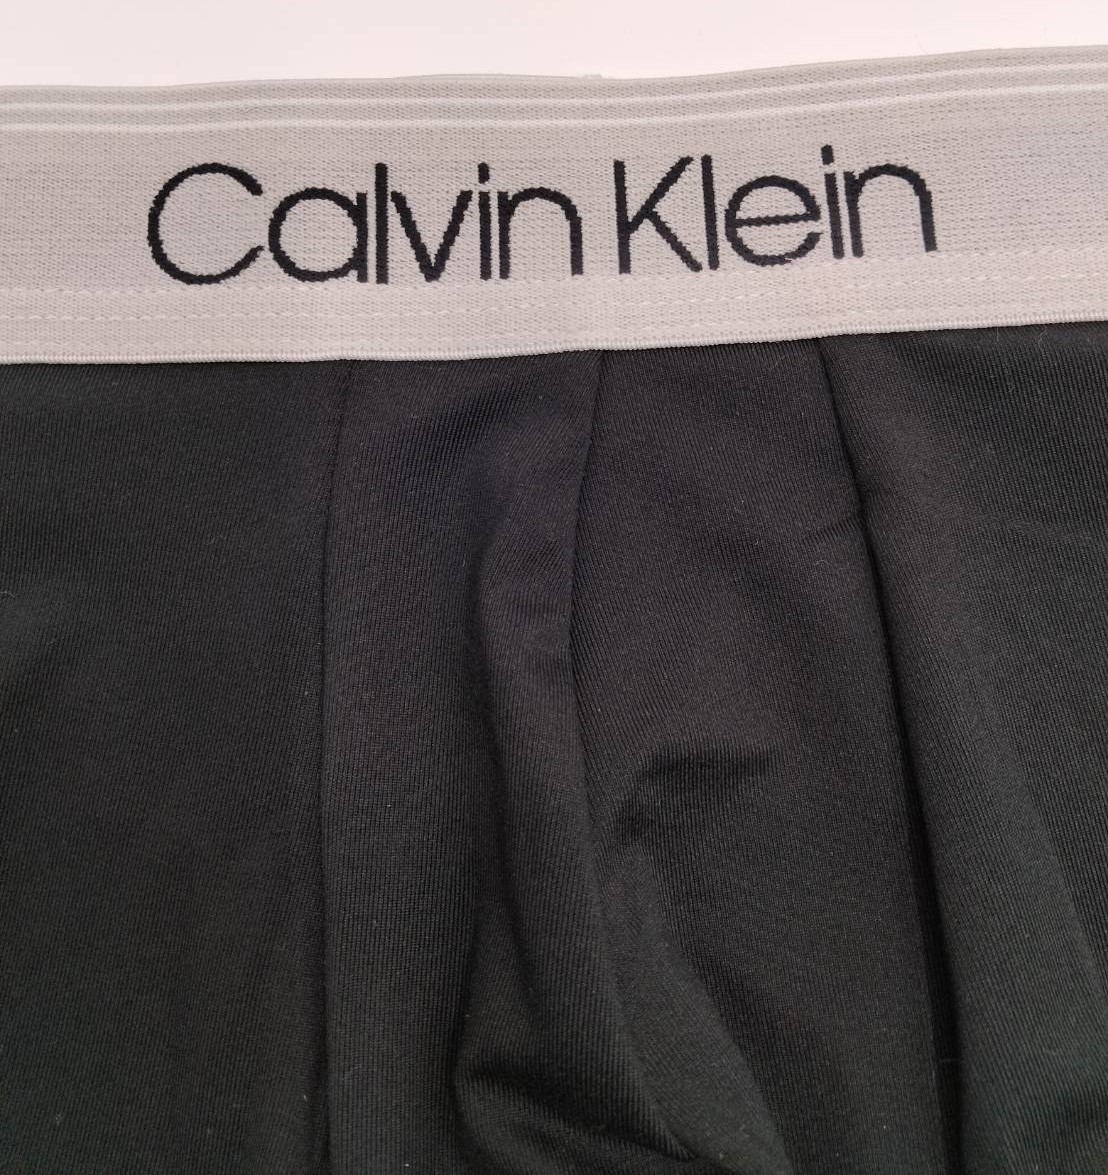 【Sサイズ】Calvin Klein(カルバンクライン) ローライズボクサーパンツ シルバー 1枚 メンズボクサーパンツ 男性下着 NP2569